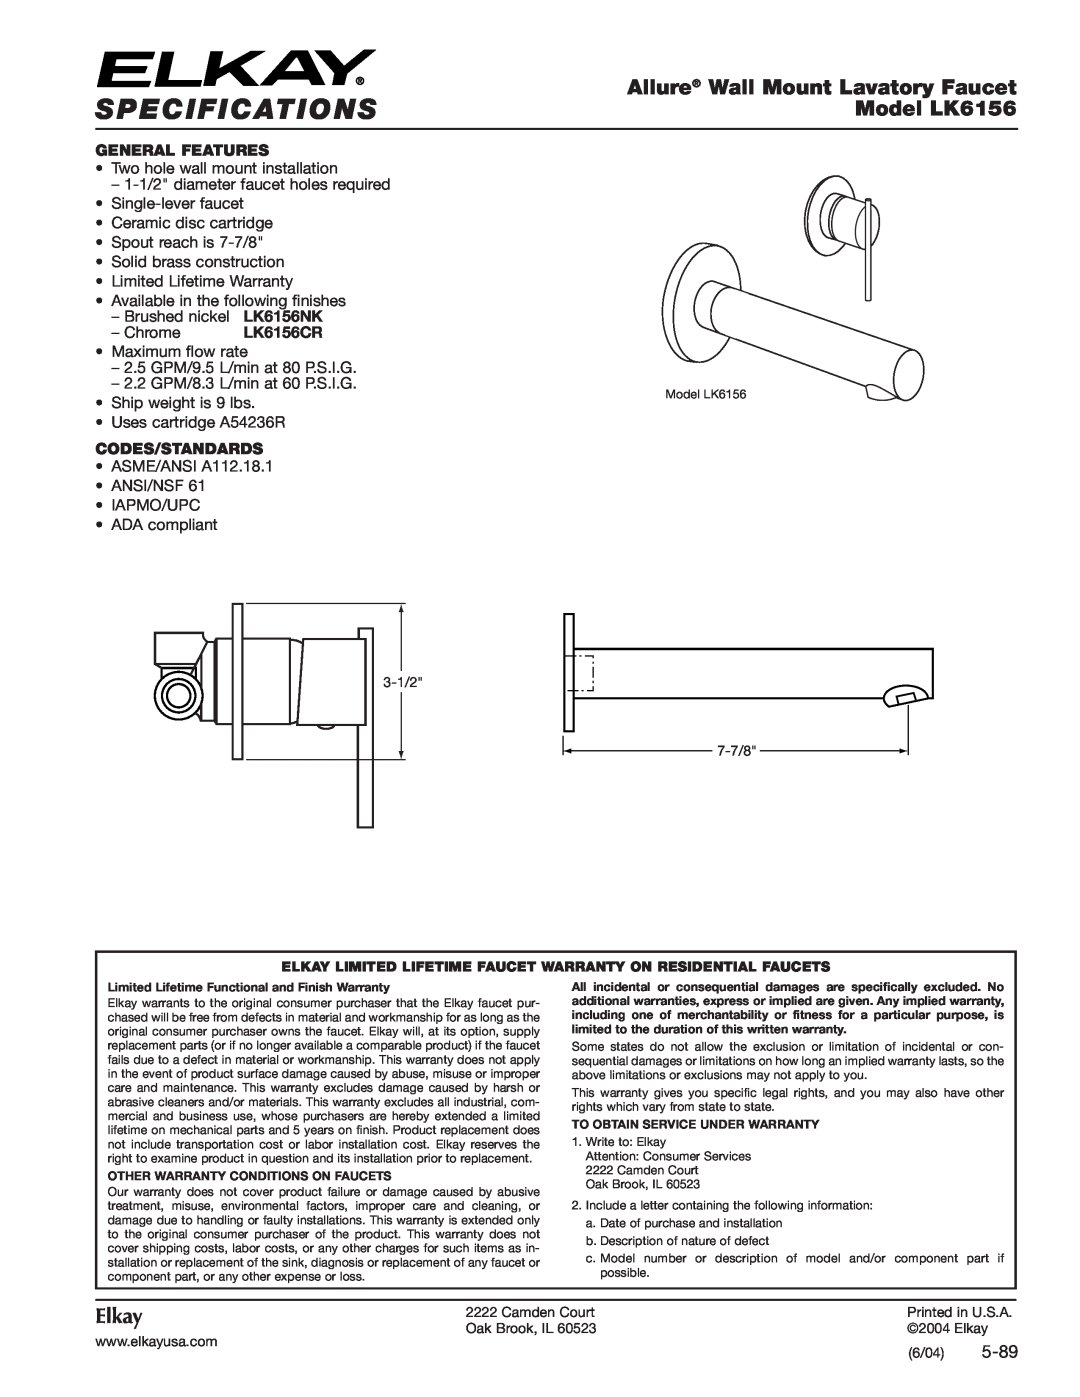 Elkay LK6156CR specifications Specifications, Allure Wall Mount Lavatory Faucet, Model LK6156, Elkay, 5-89 